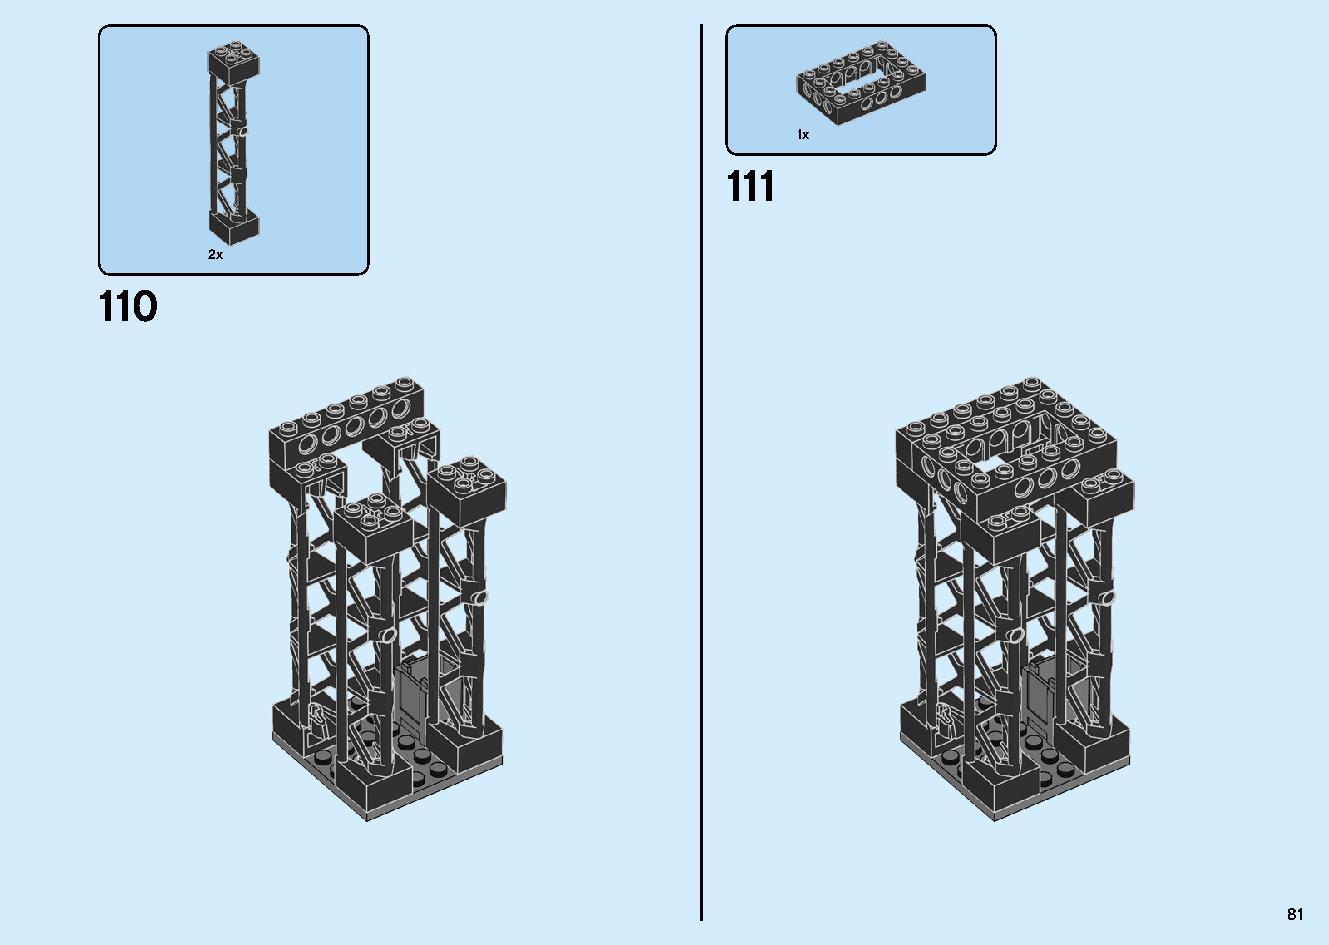 マッドキング神殿 71712 レゴの商品情報 レゴの説明書・組立方法 81 page